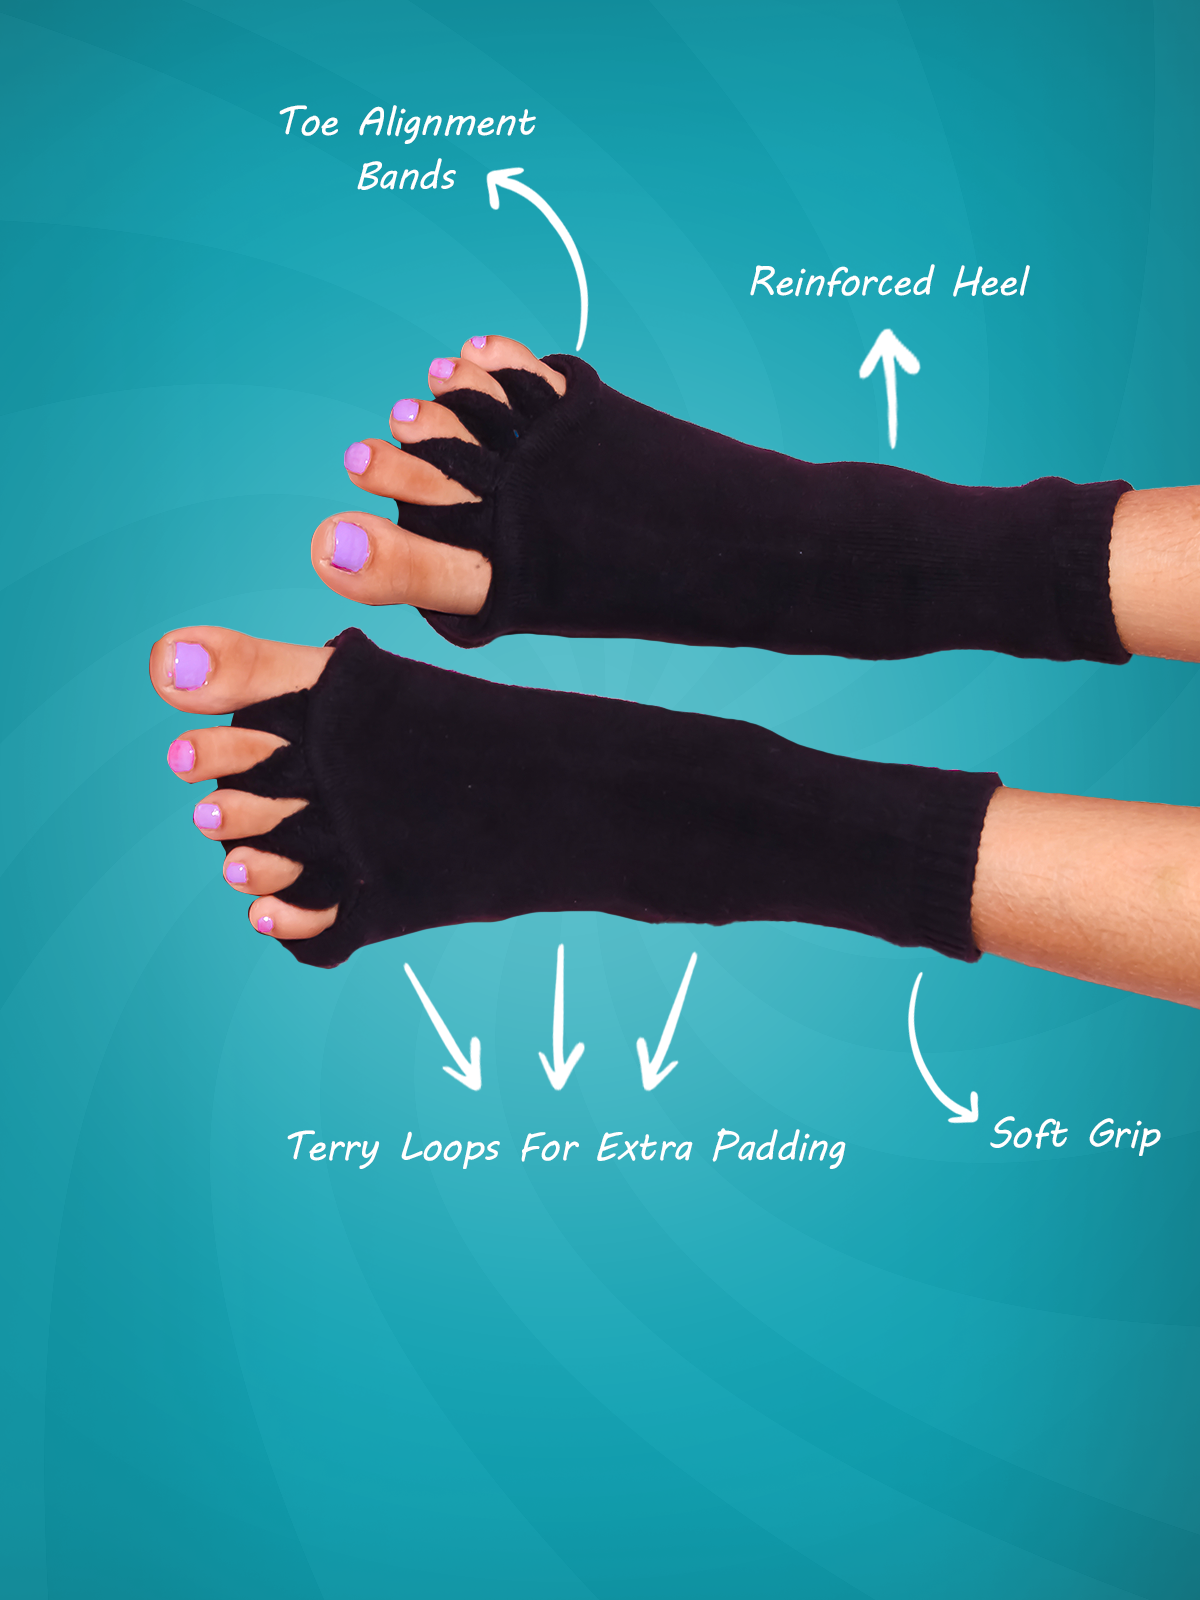 Buy Silk Socks Mens Online In India -  India